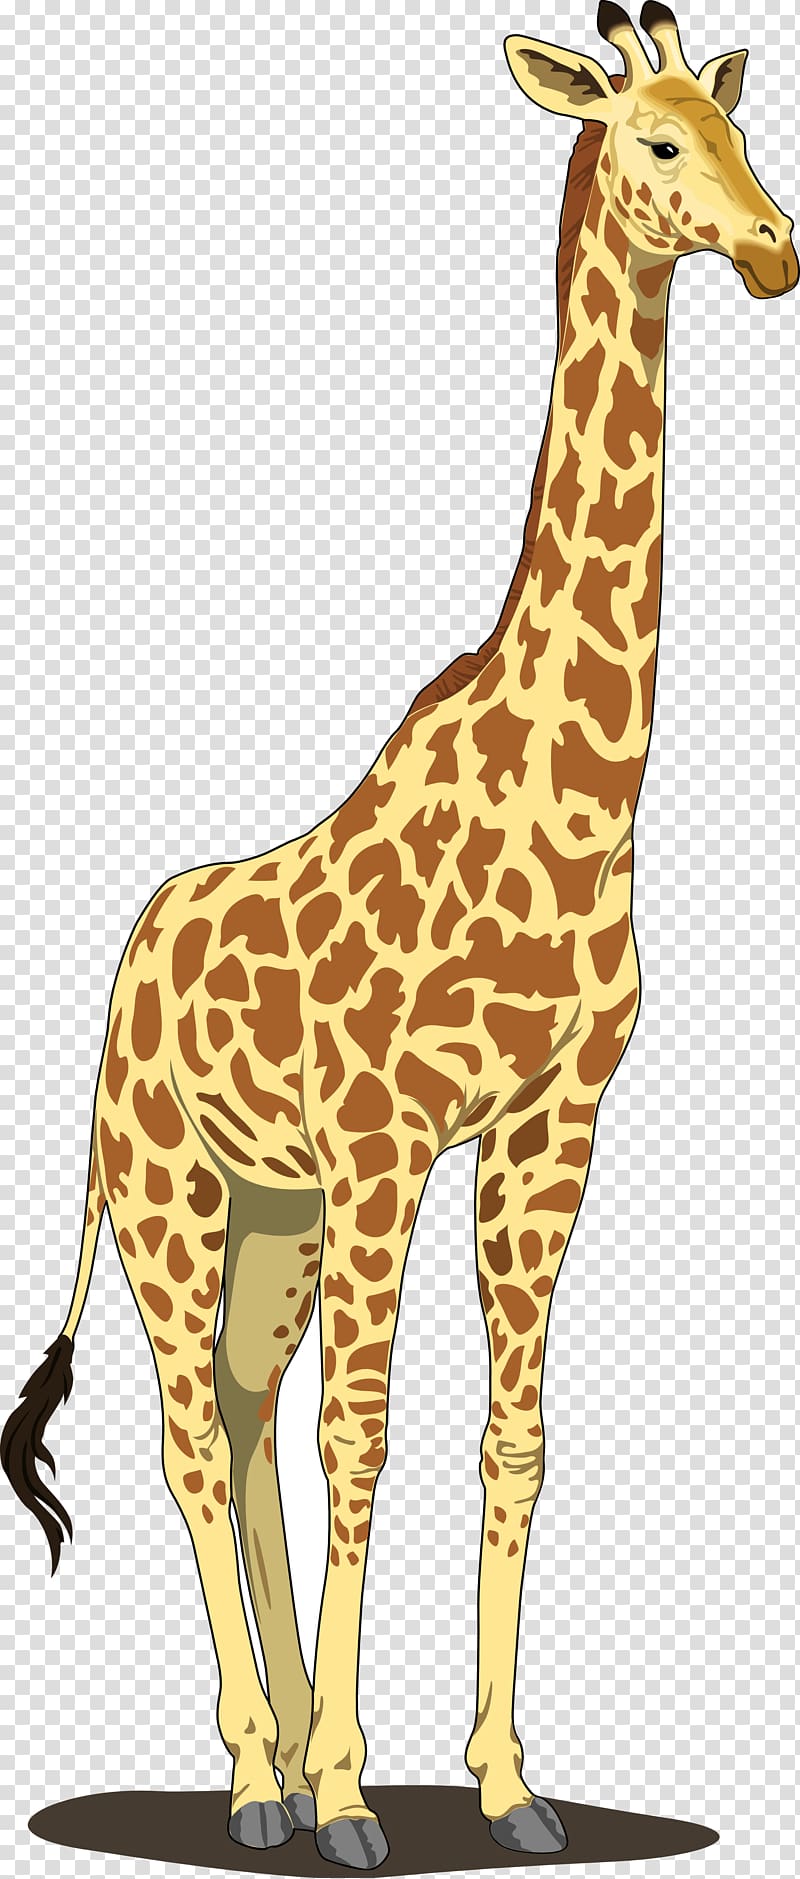 Giraffe Blog , Giraffe transparent background PNG clipart